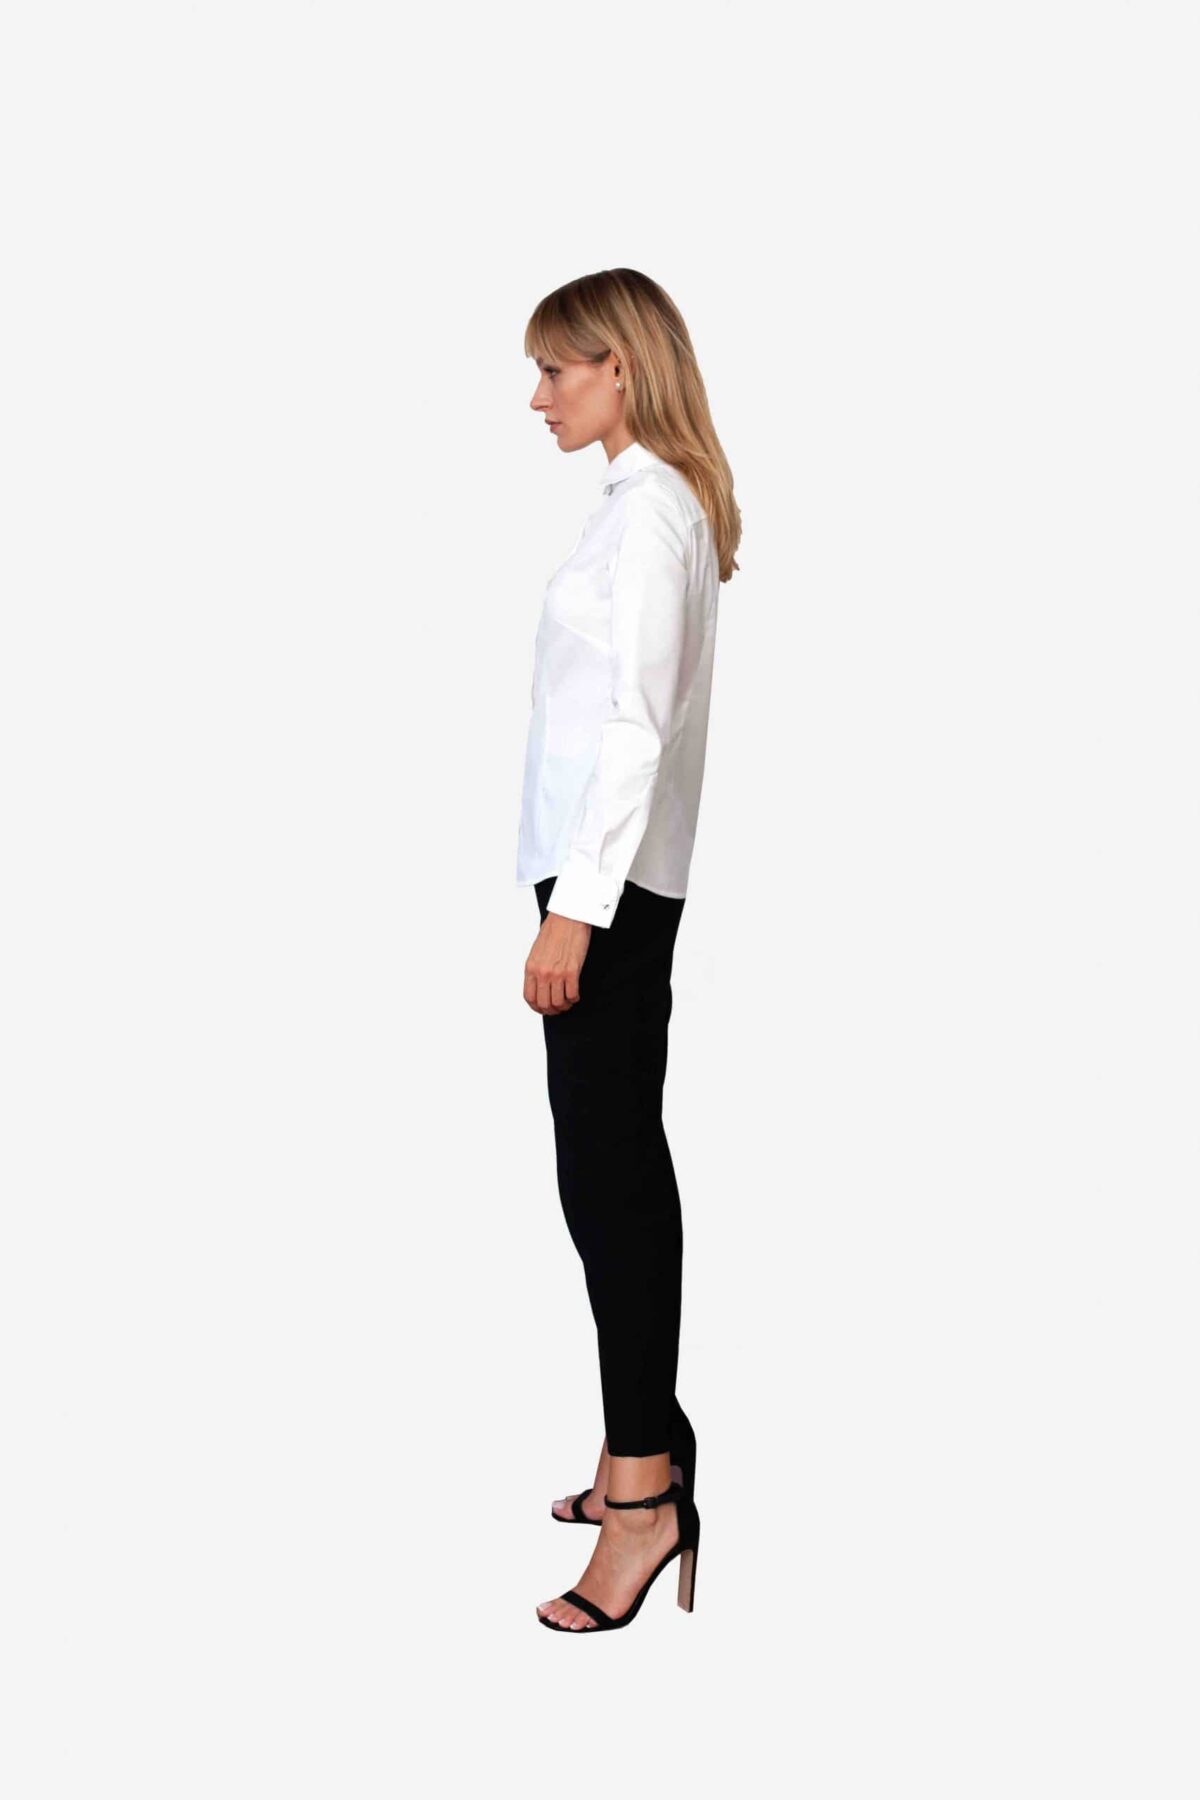 Bluse Michelle von SANOGE. Klassische Business Bluse in weiß. Made in Germany. Pflegeleicht, besonders atmungsaktiv, knitterarm, easy care.